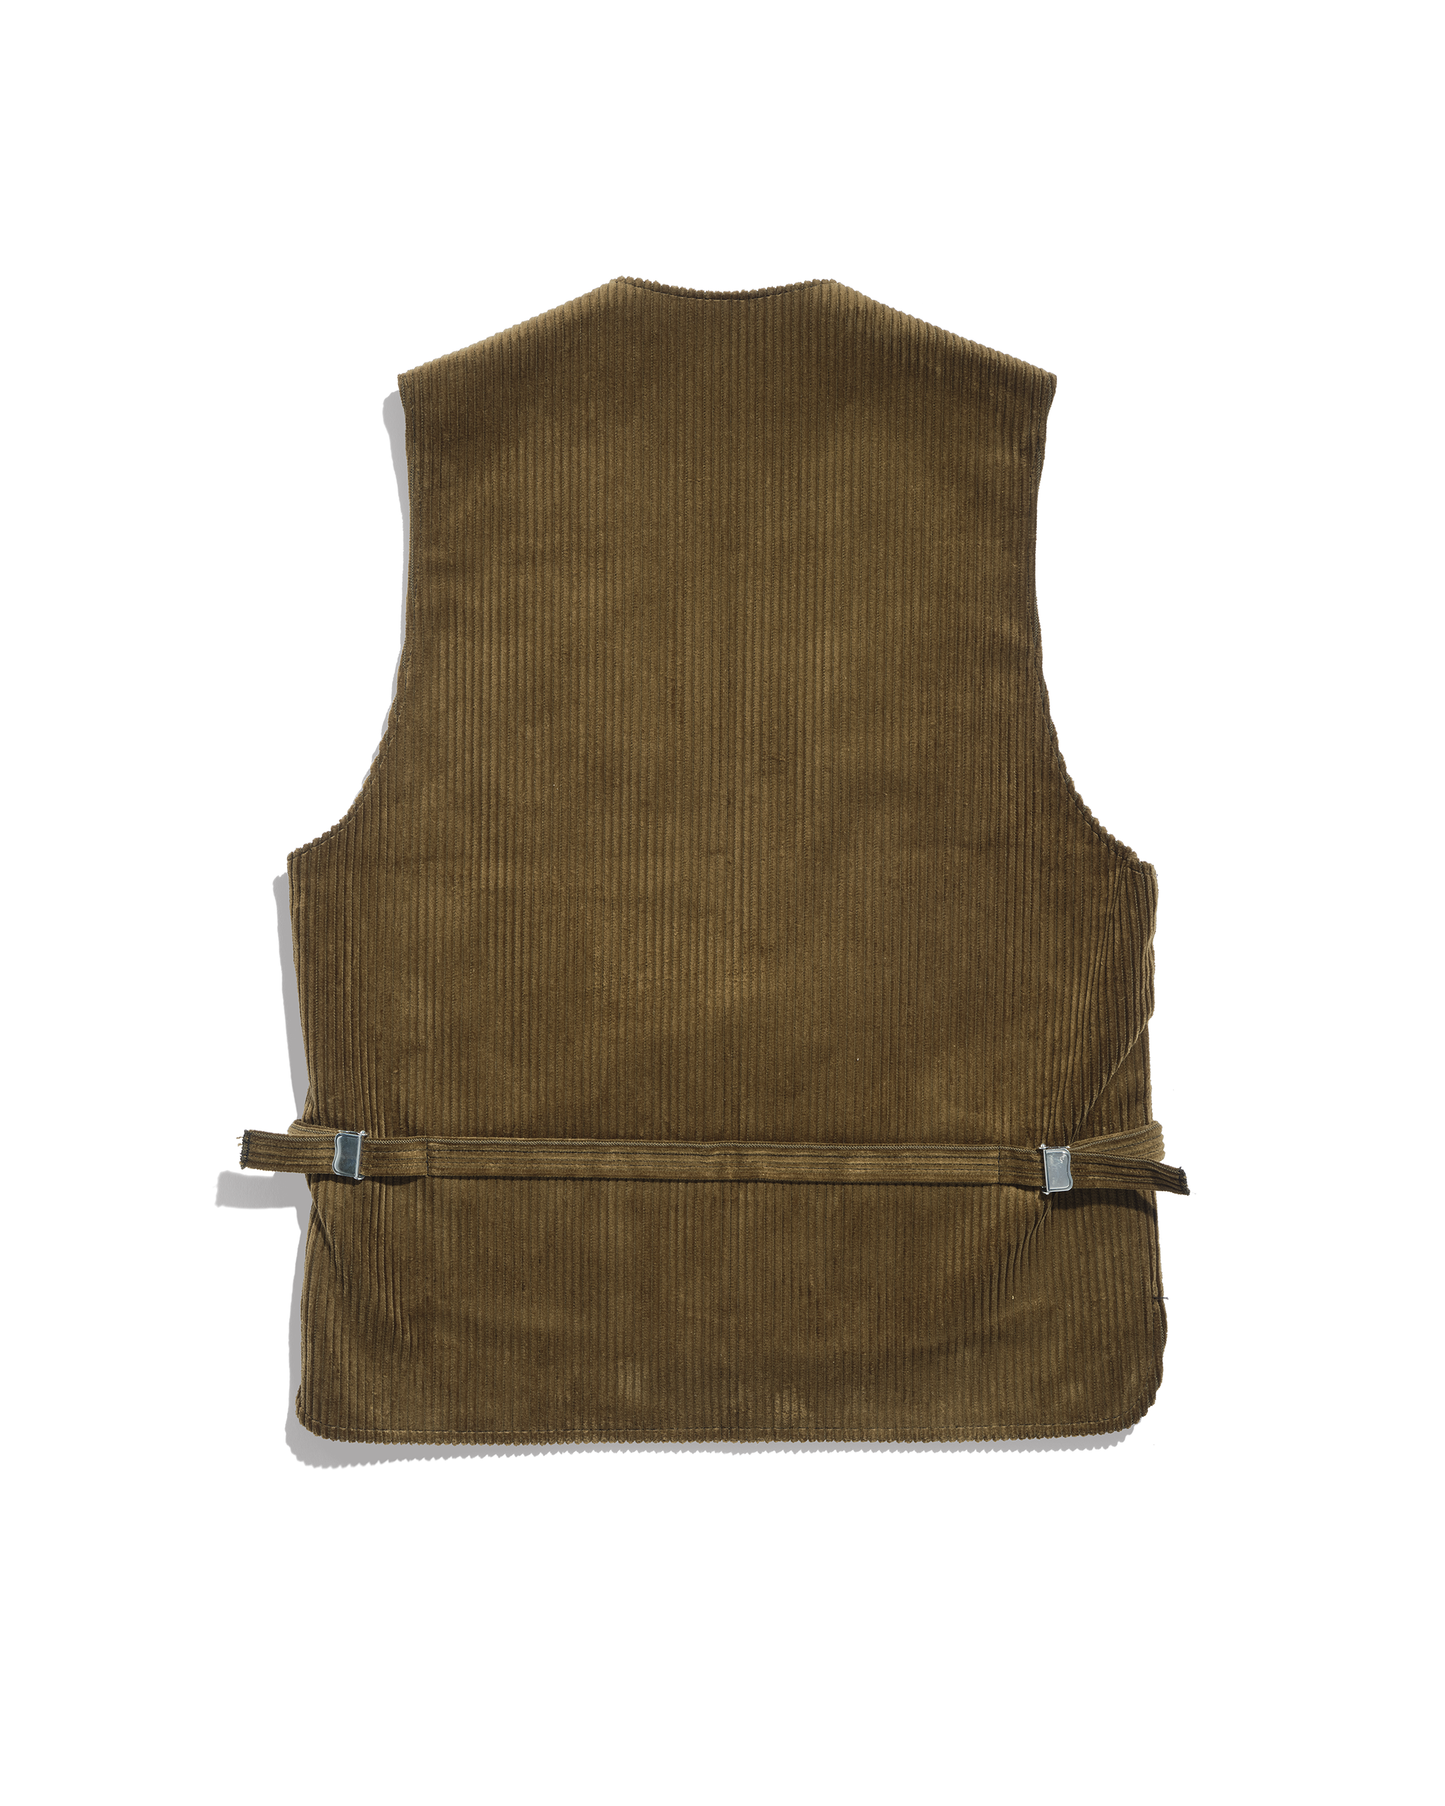 German corporate vest in olive brown rush velvet